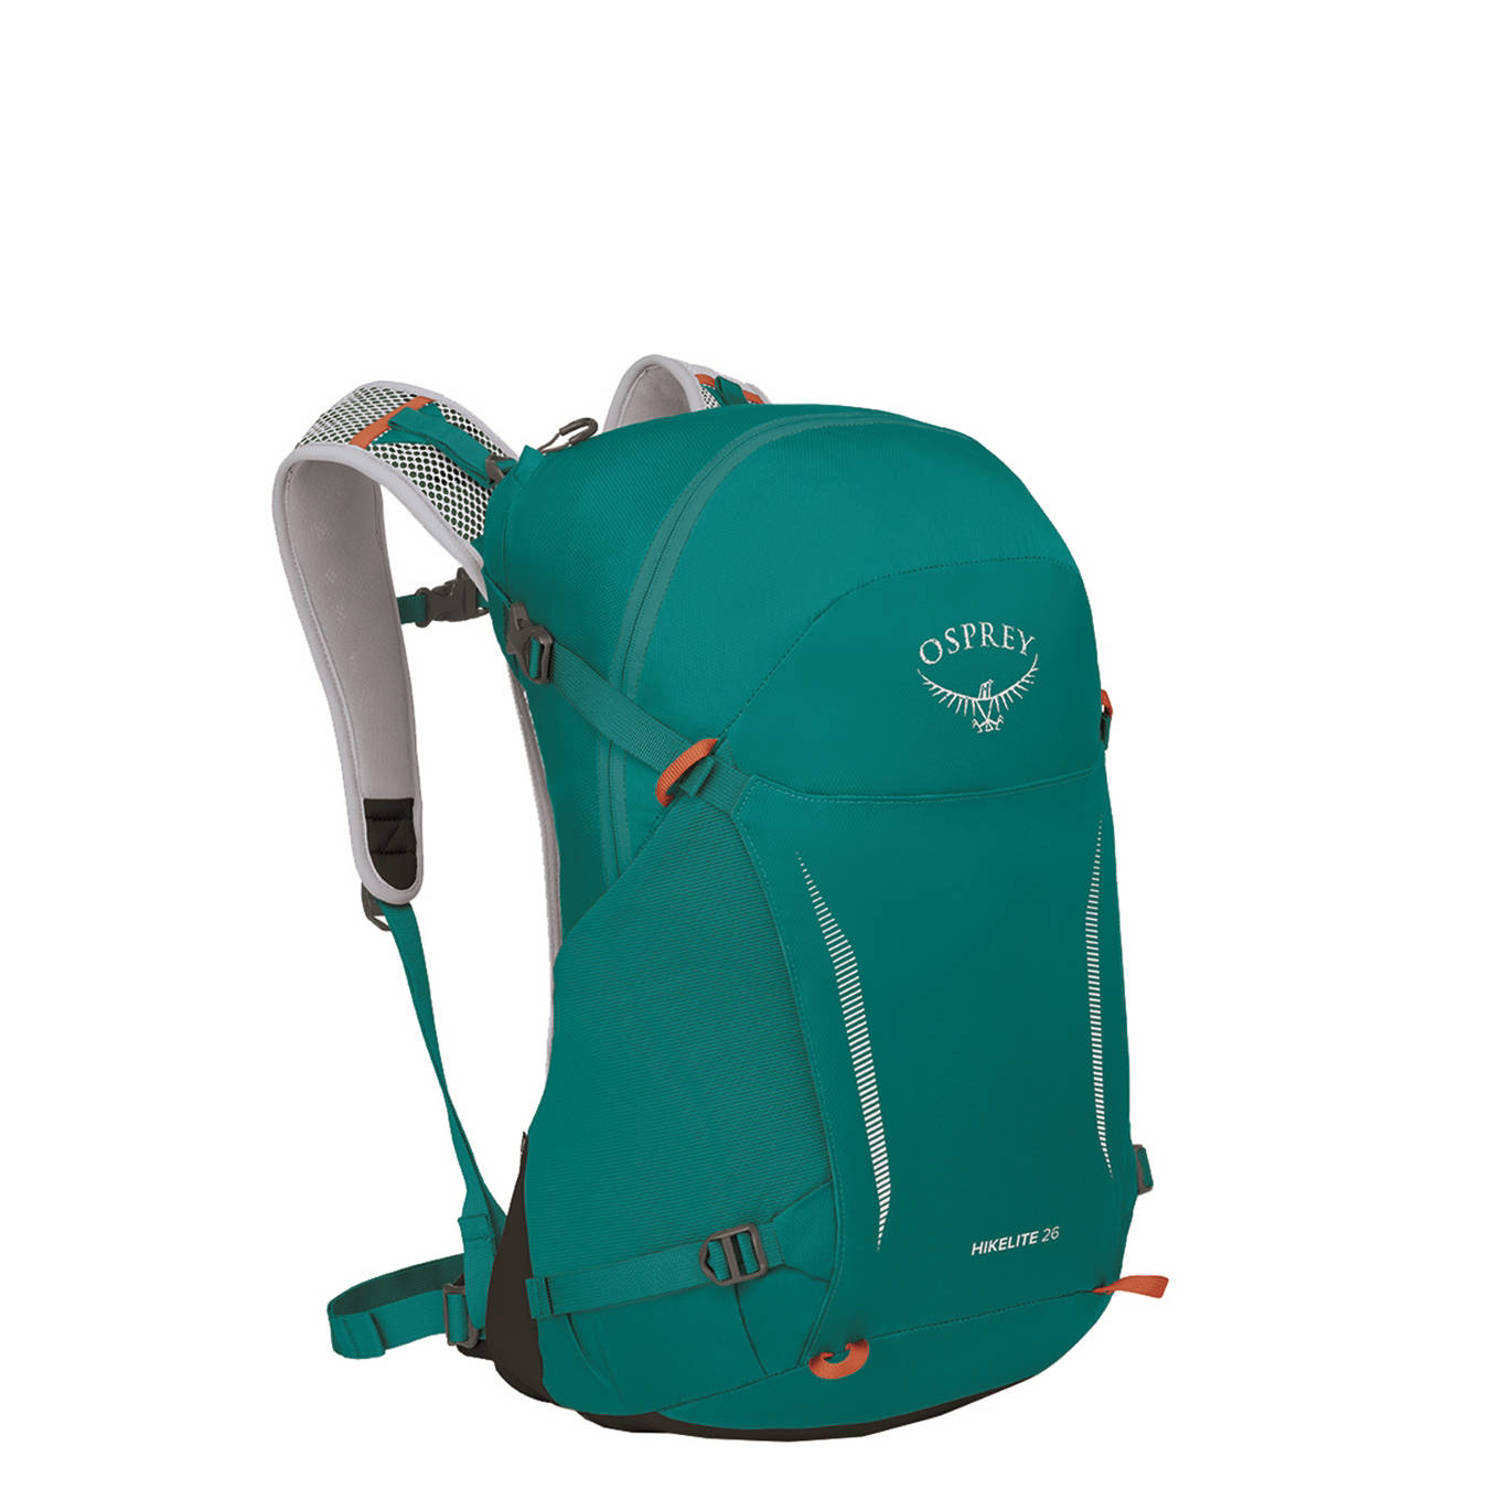 Osprey backpack Hikelite 26L groen